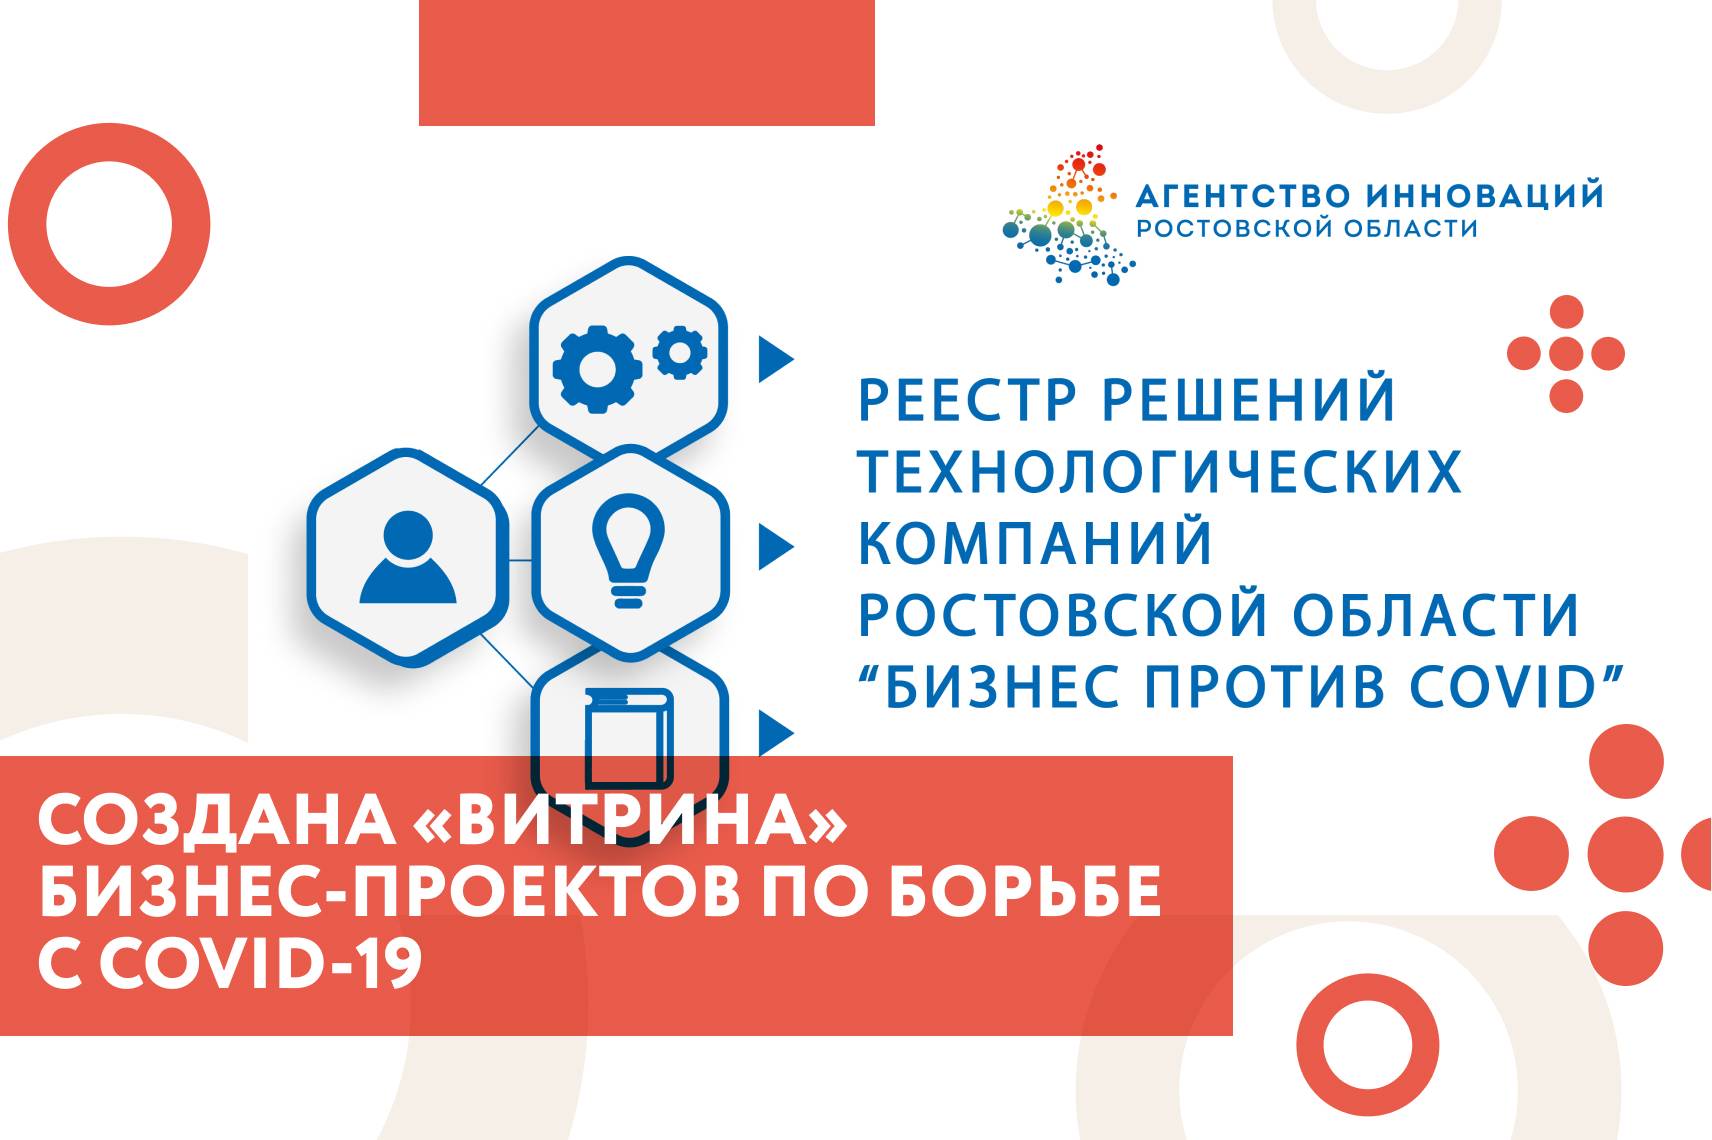 В Ростовской области создана «витрина» бизнес-проектов по борьбе с COVID-19